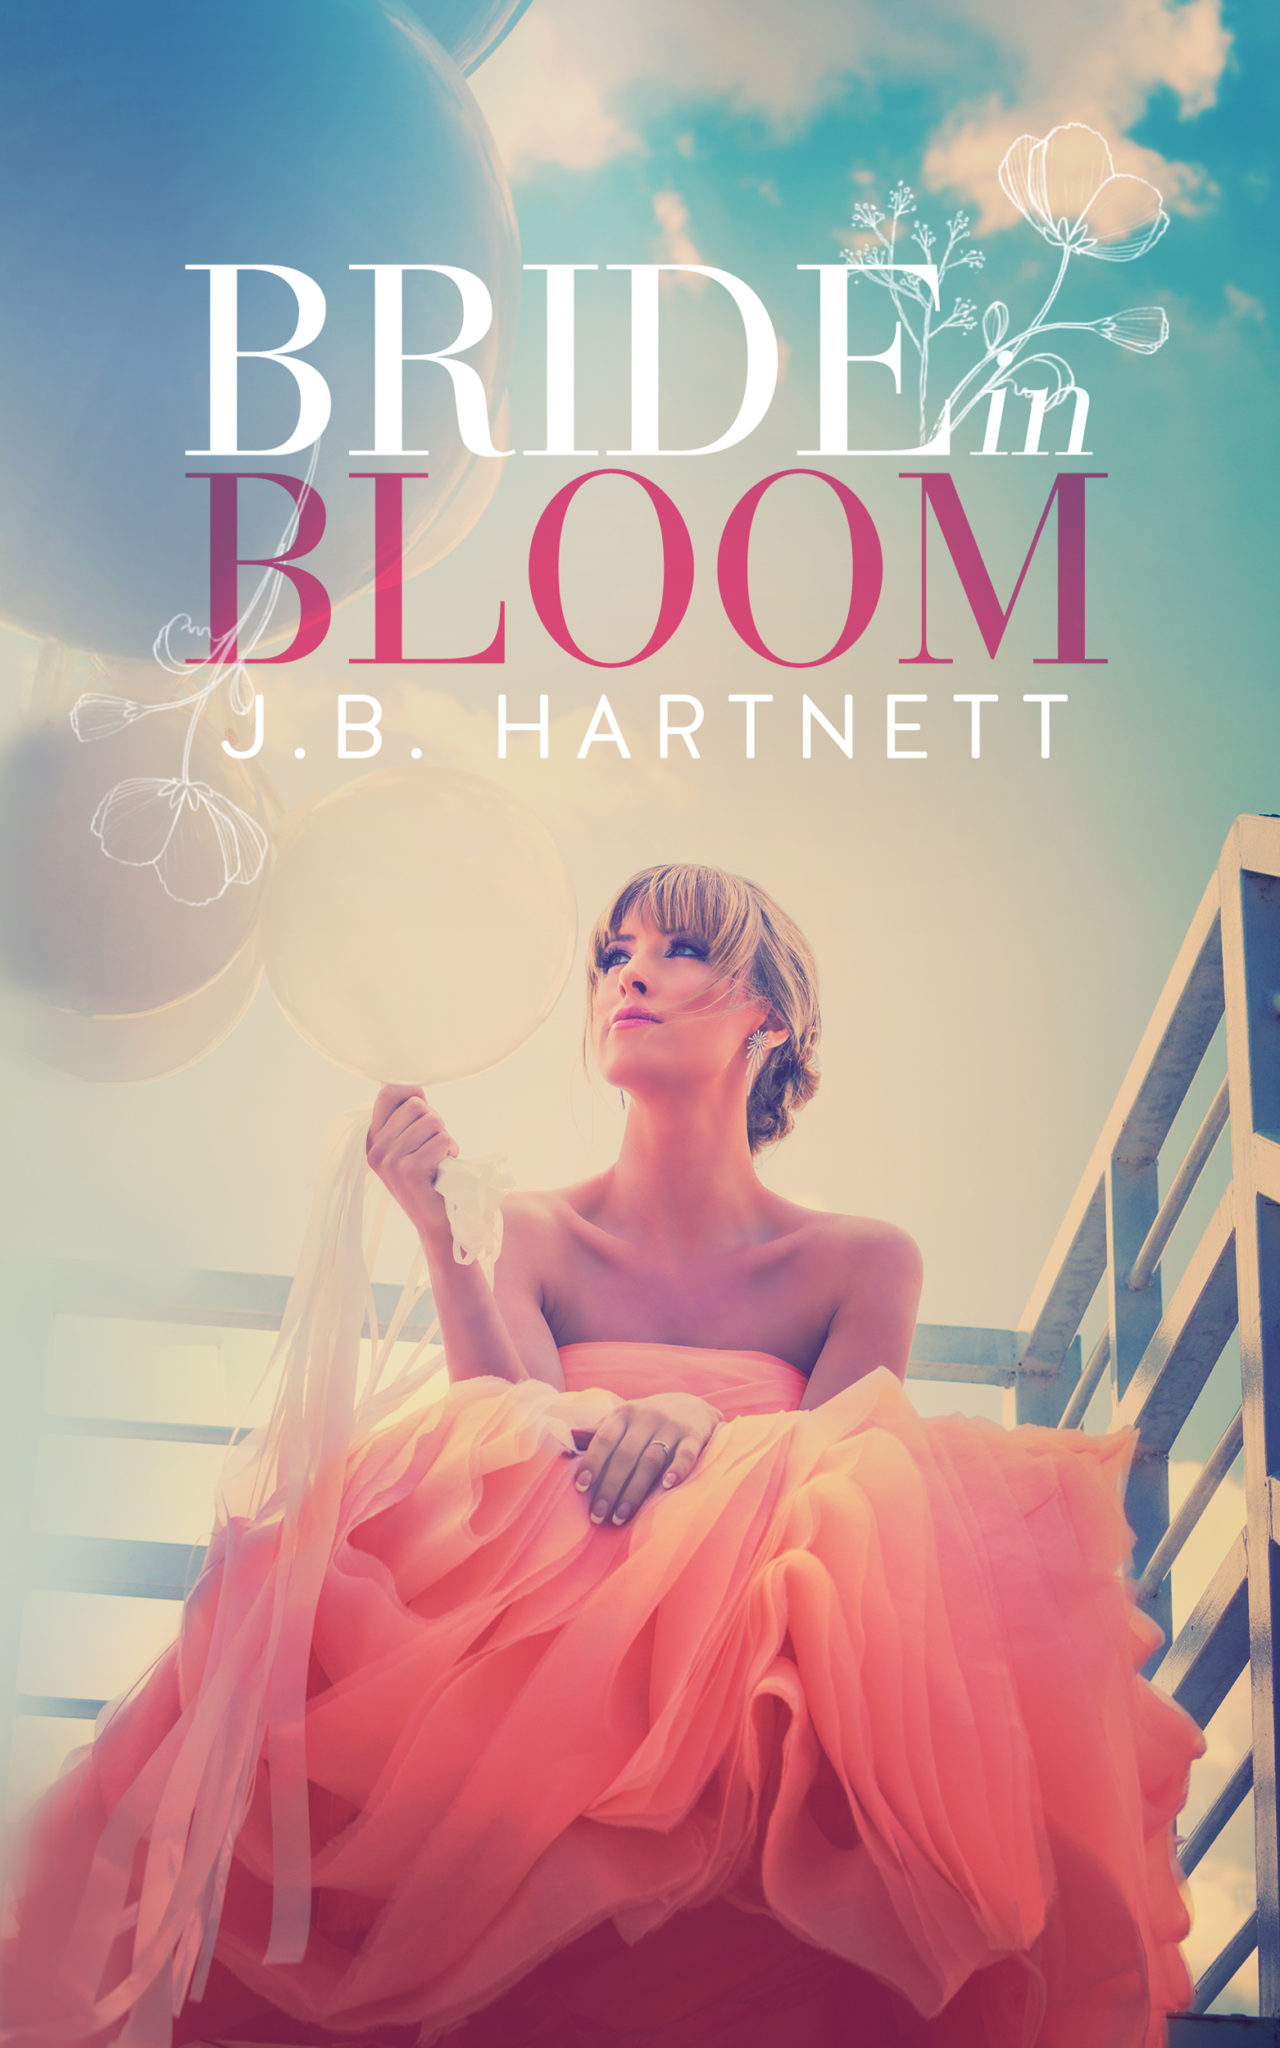 Bride in Bloom by J.B. Hartnett